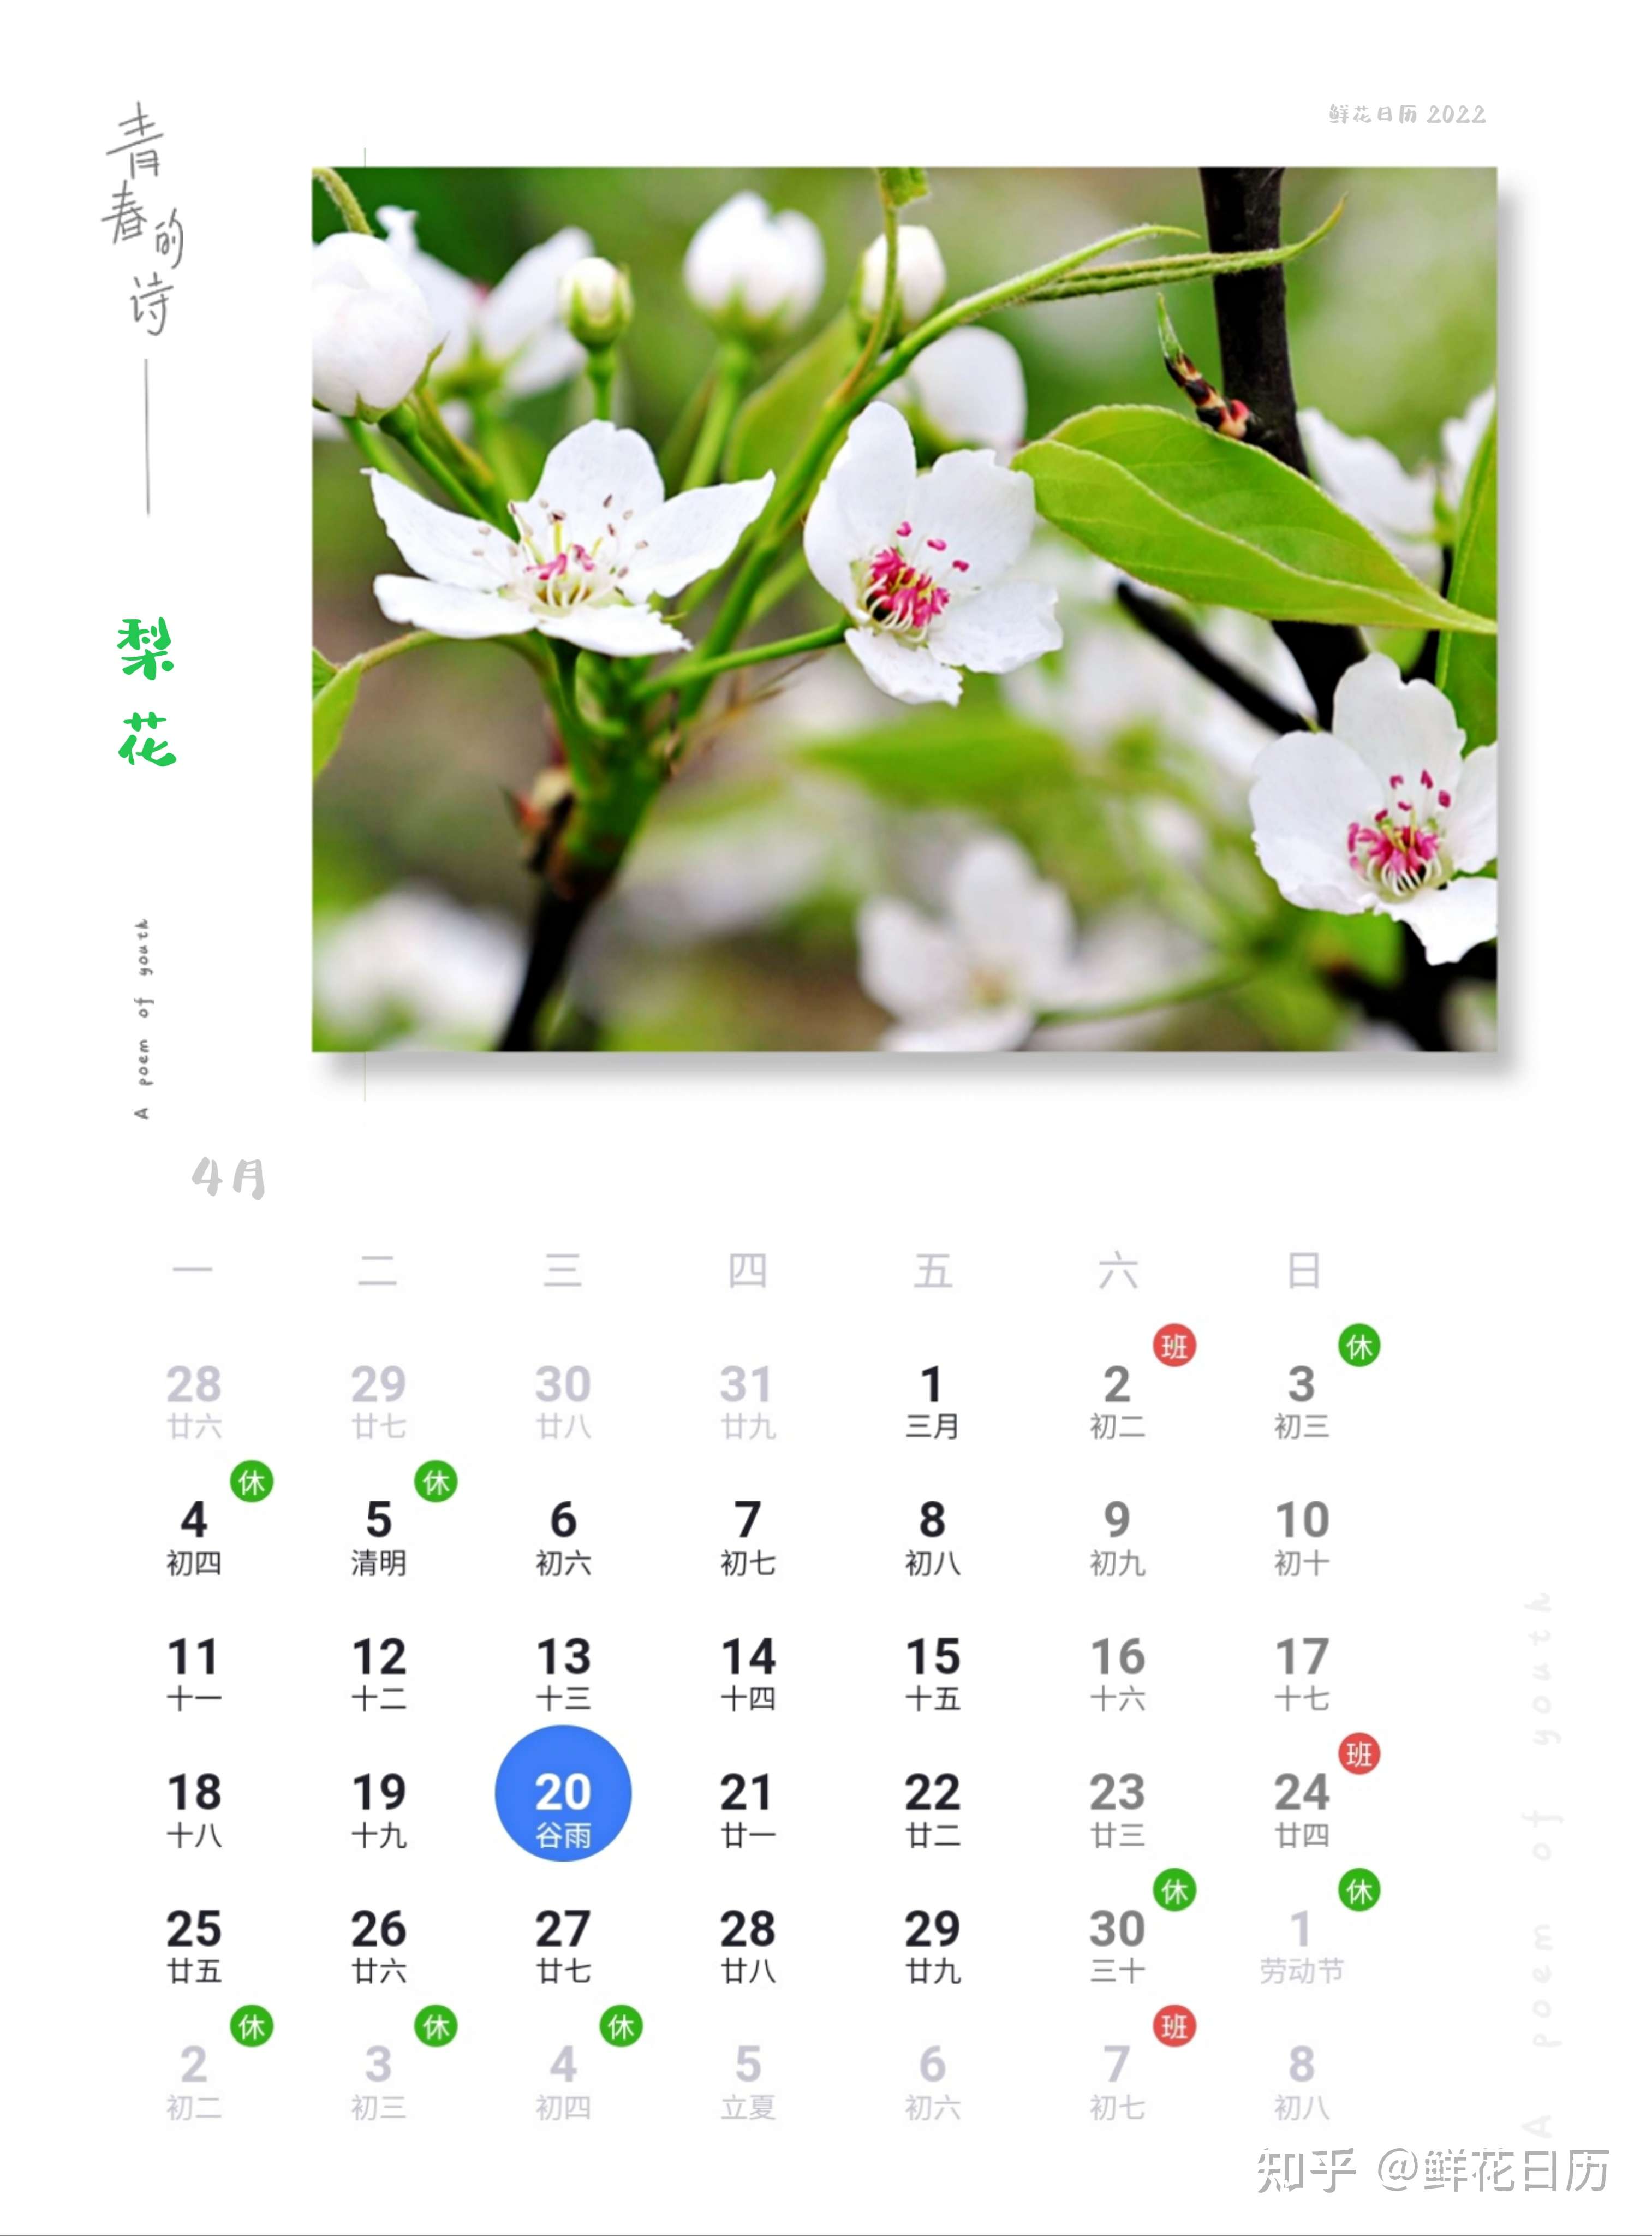 鲜花日历 的想法: 鲜花日历,4月20日梨花 